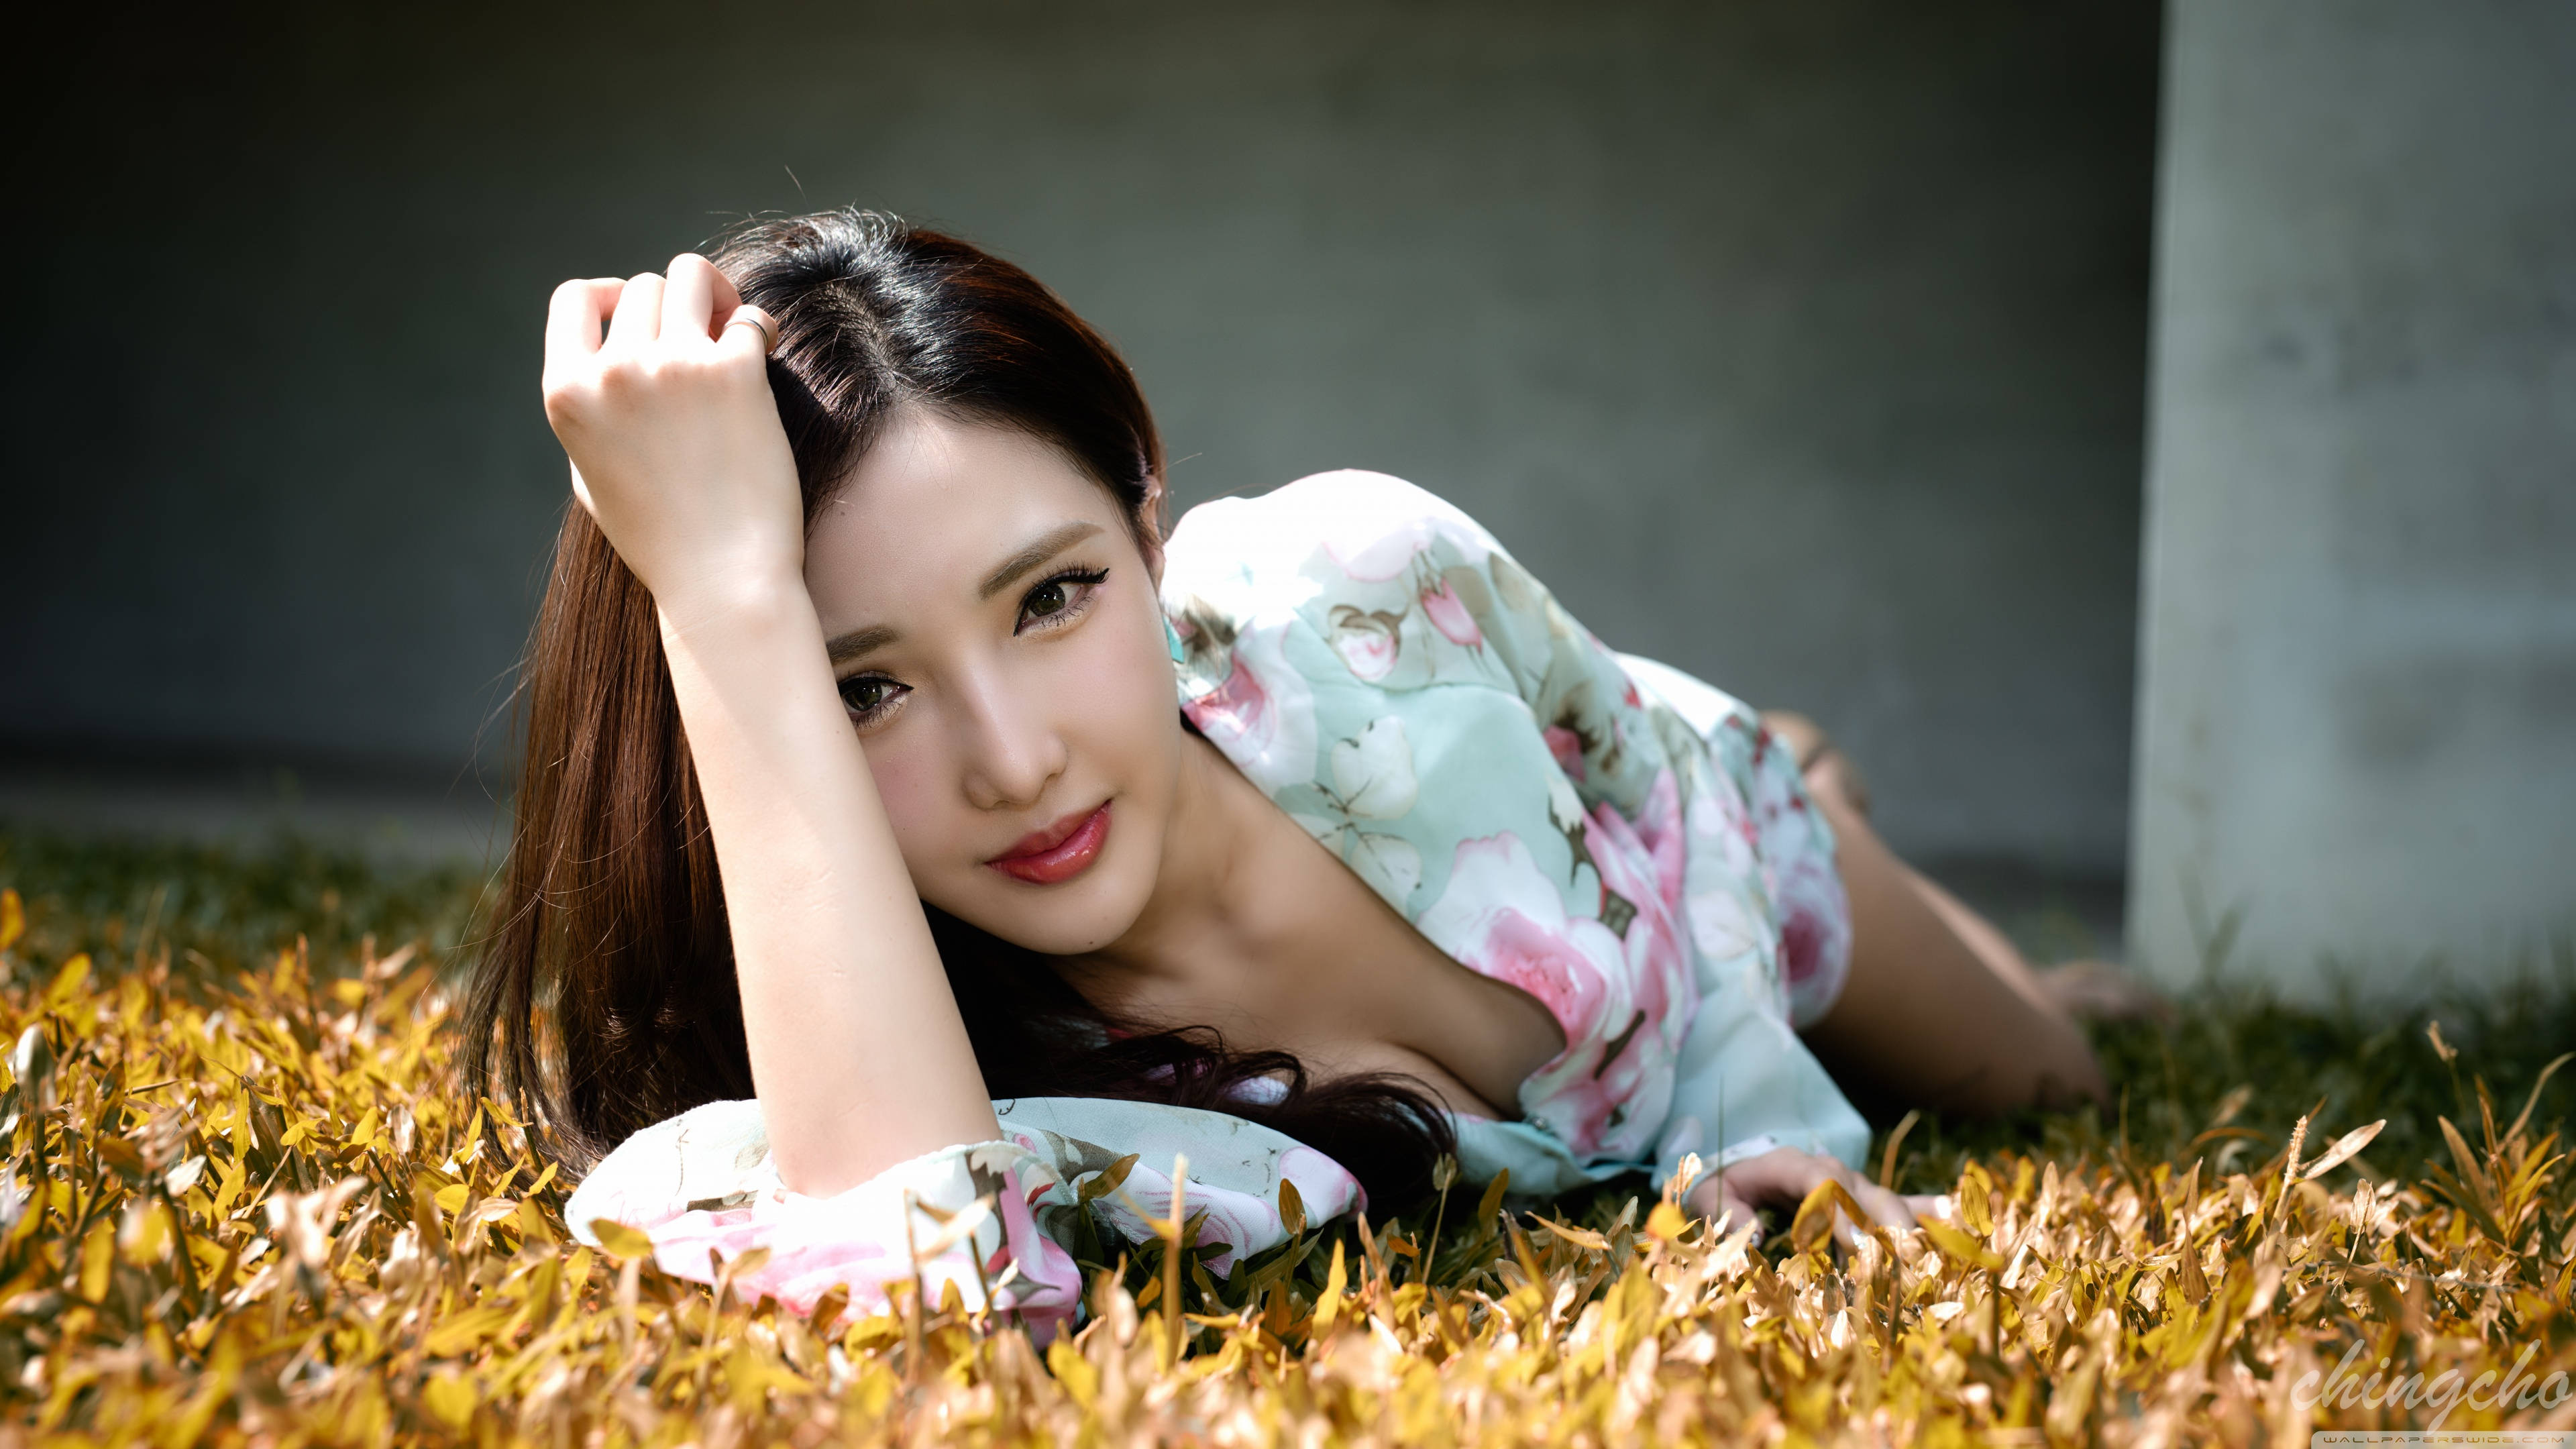 Korean Girl Posing On The Grass Background